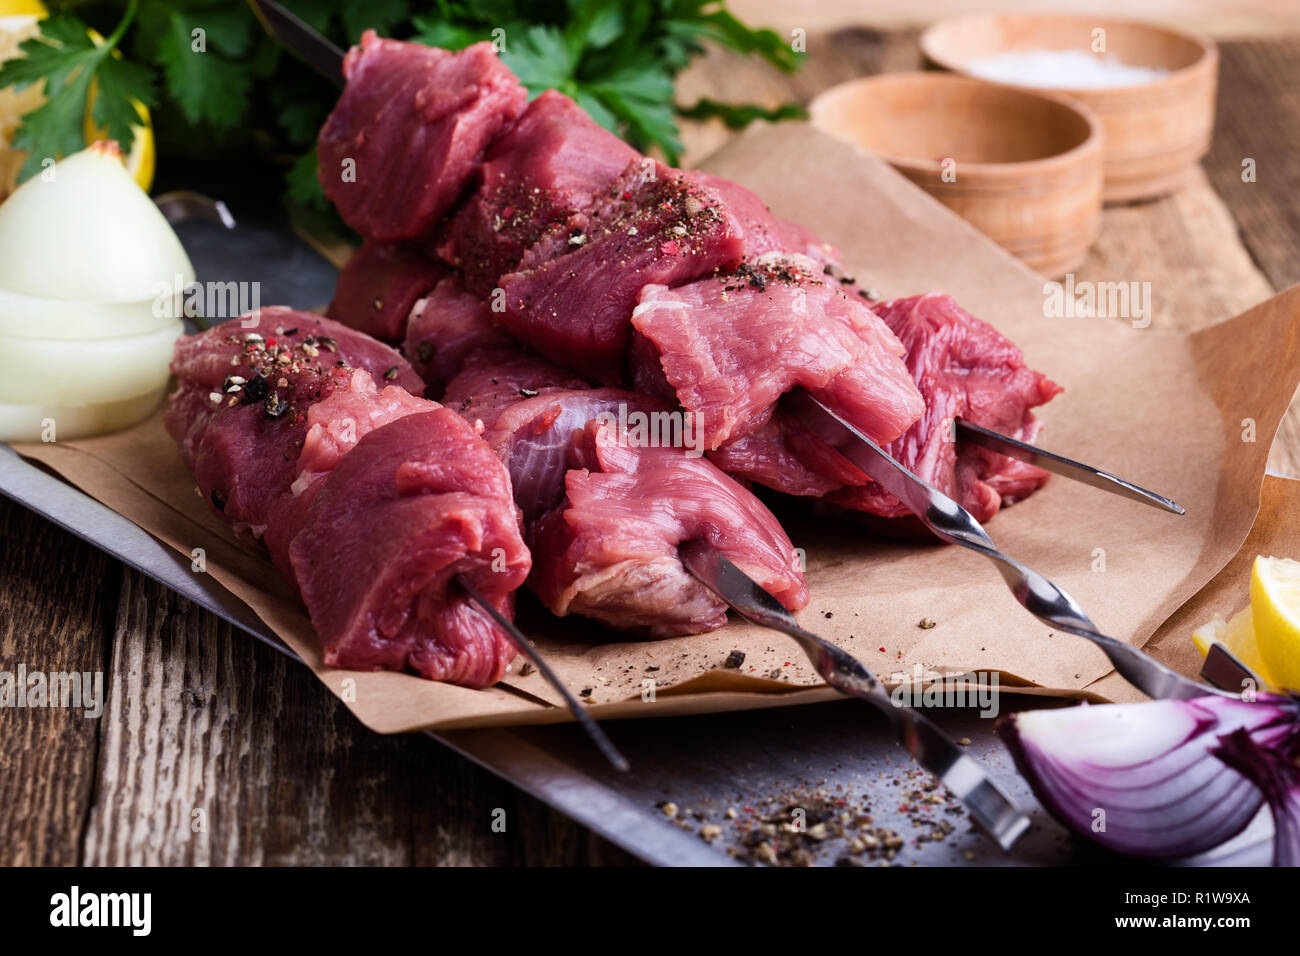 Brochettes de boeuf frais crus,boucherie viande hachée crue et ingrédients culinaires sur table en bois Banque D'Images